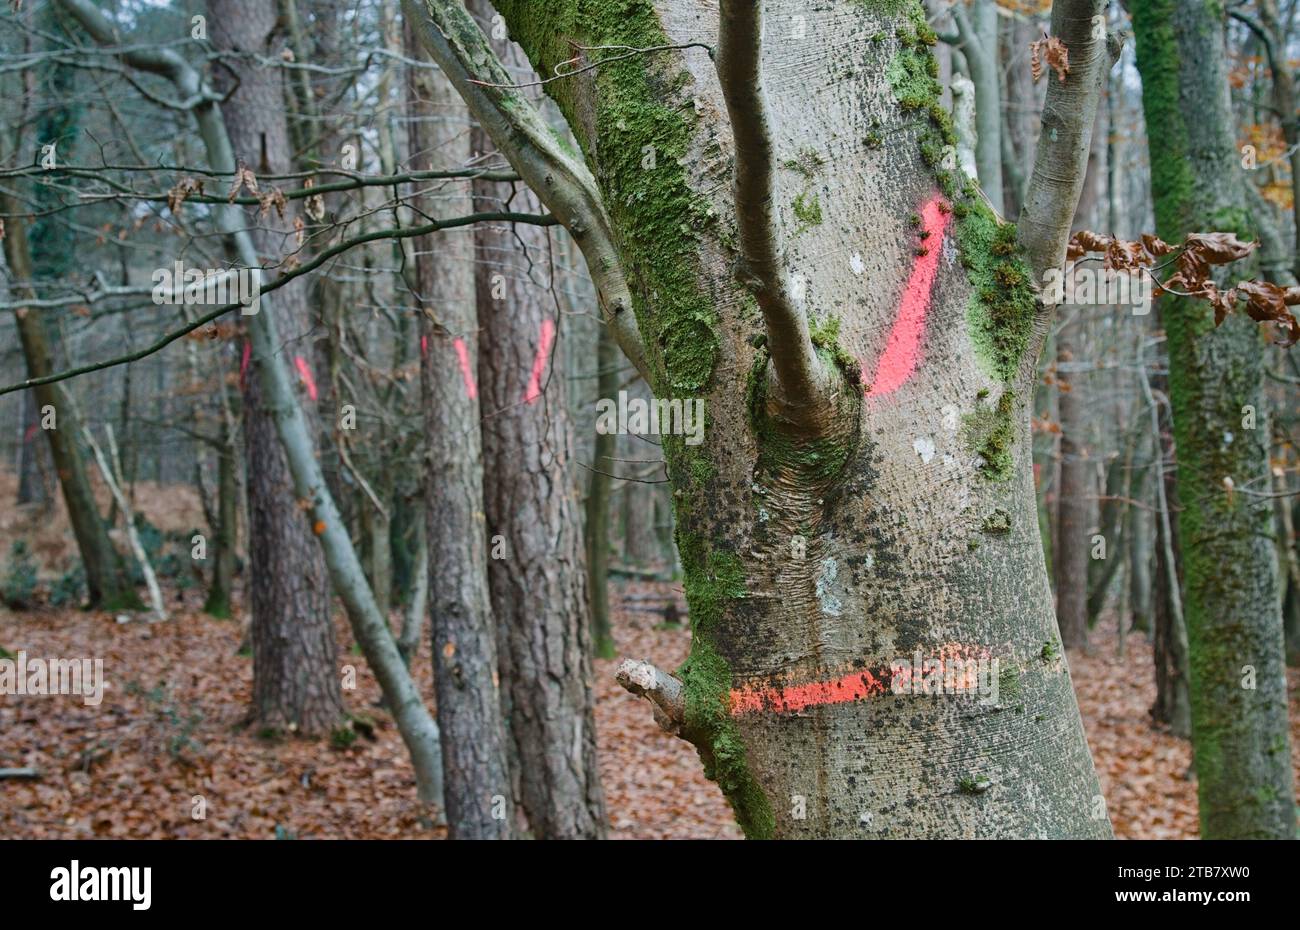 Lackierte Flourescent Forestry Marks, die Bäume zeigen, deren Umfang gemessen wurde und bereit zum Fällen sind, New Forest UK Stockfoto